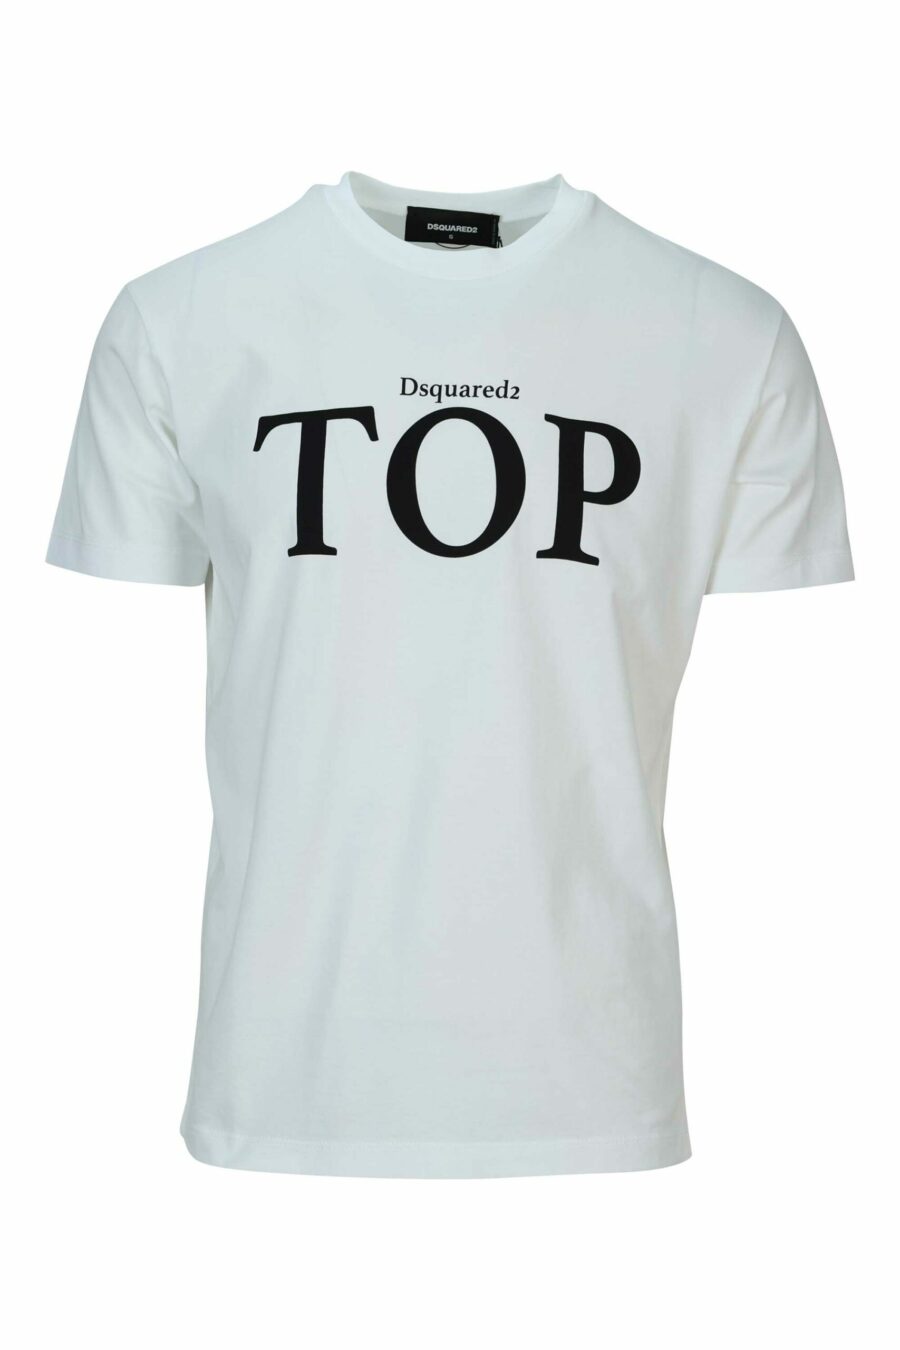 Camiseta blanca con maxilogo "top" - 8054148570866 scaled